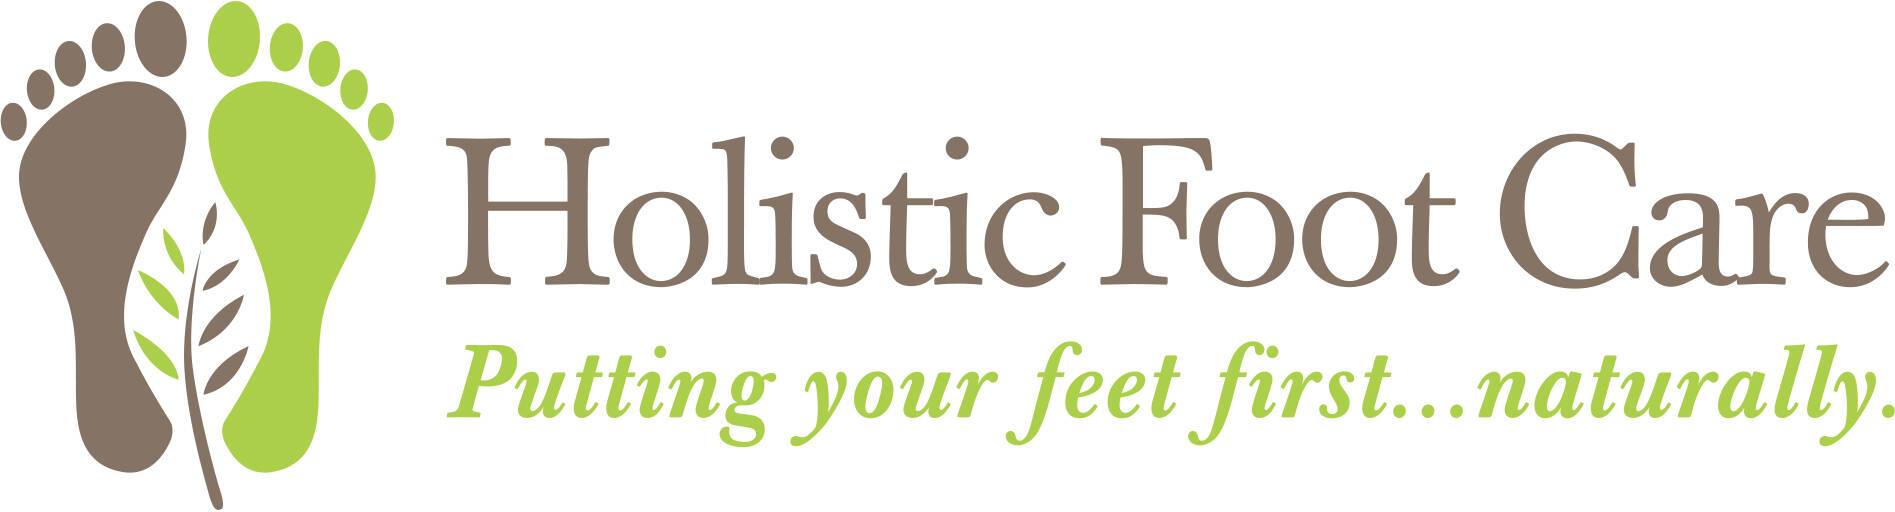 Holistic Foot Care